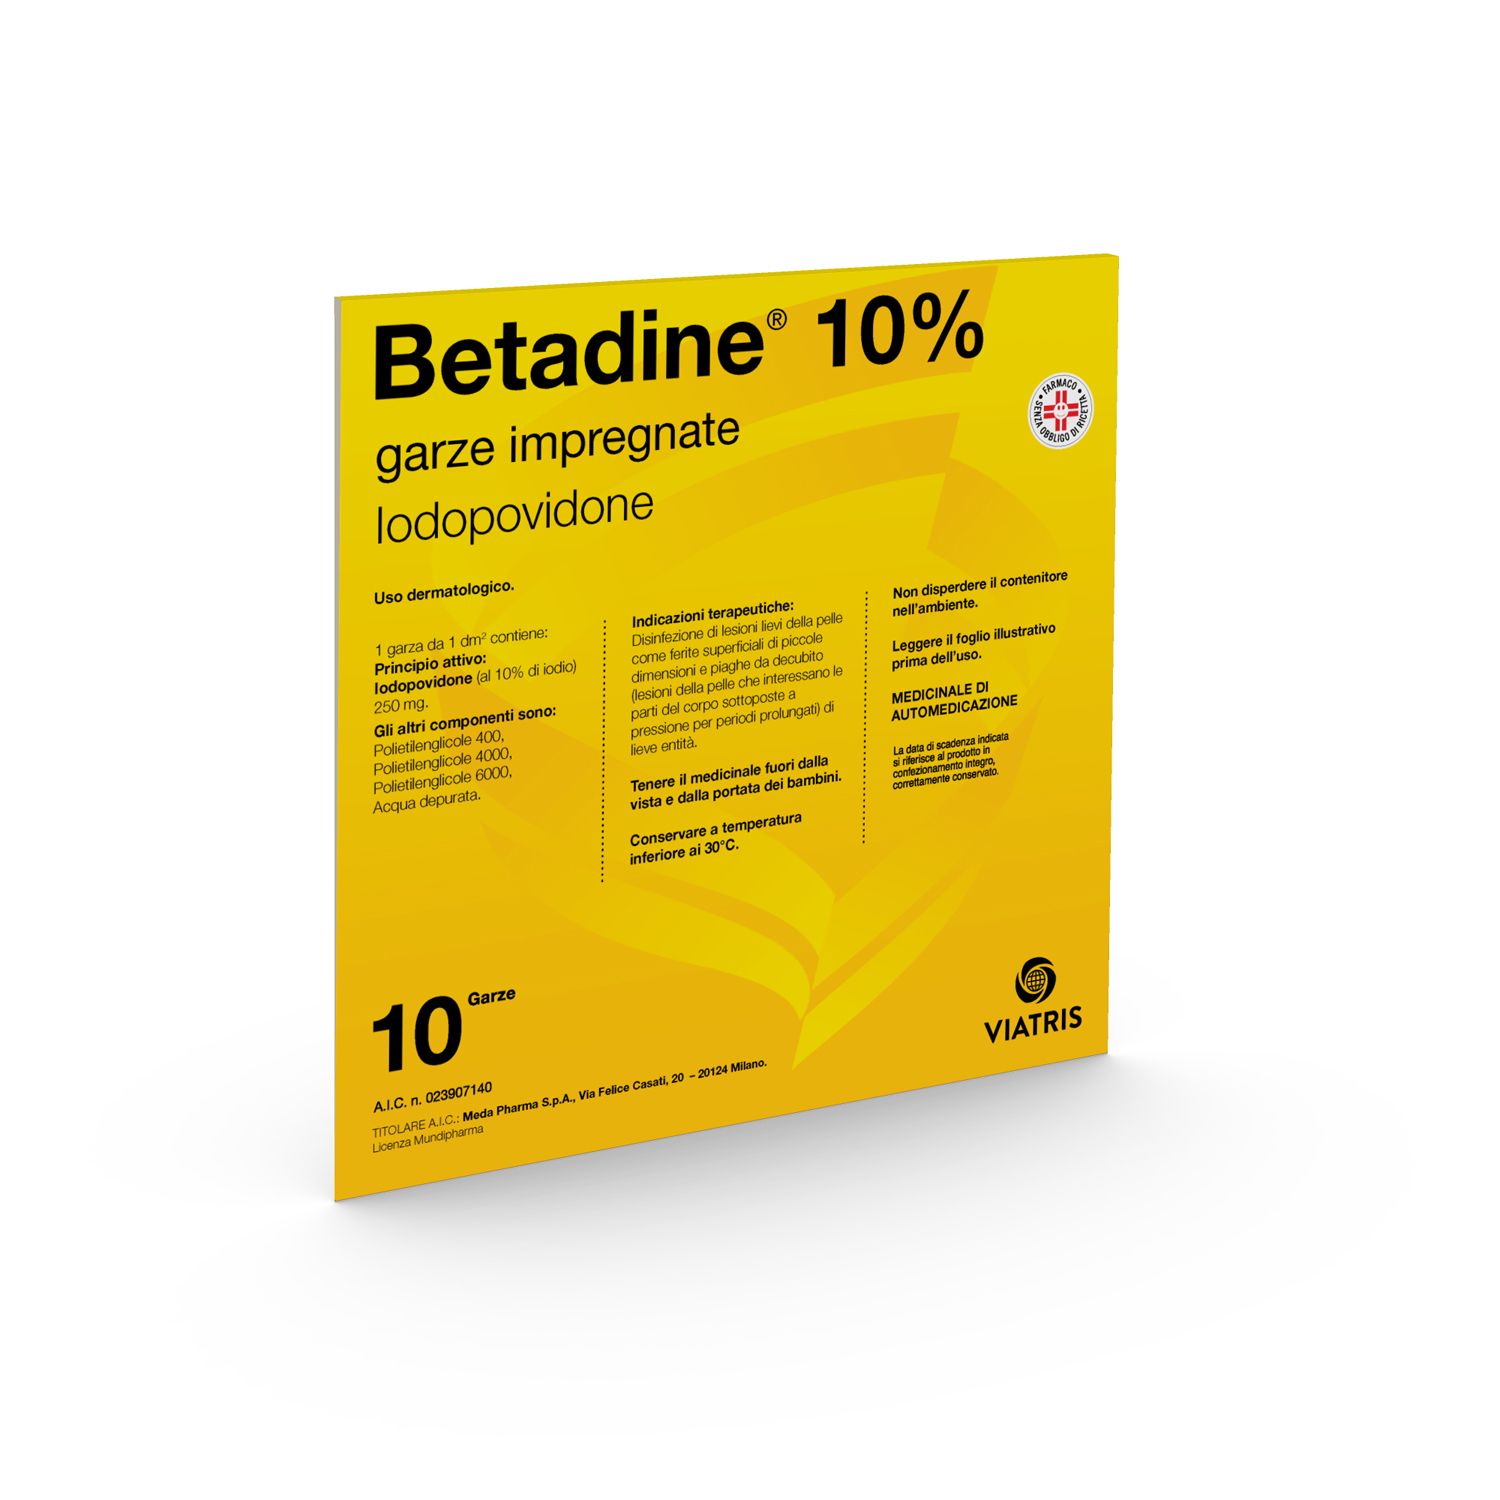 Betadine® Garze impregnate Iodopovidone 10%